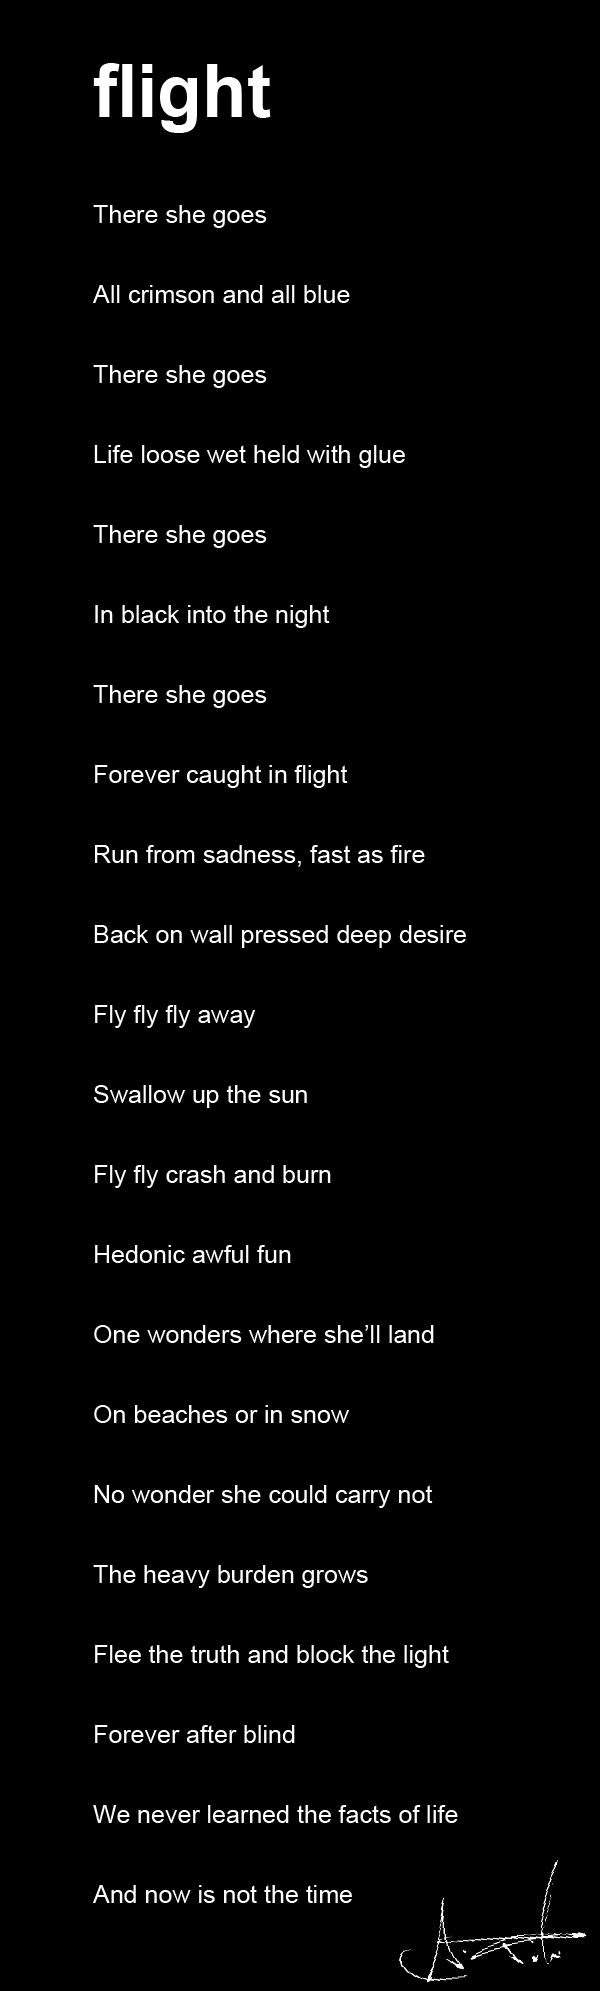 Poems_flight_v1.png